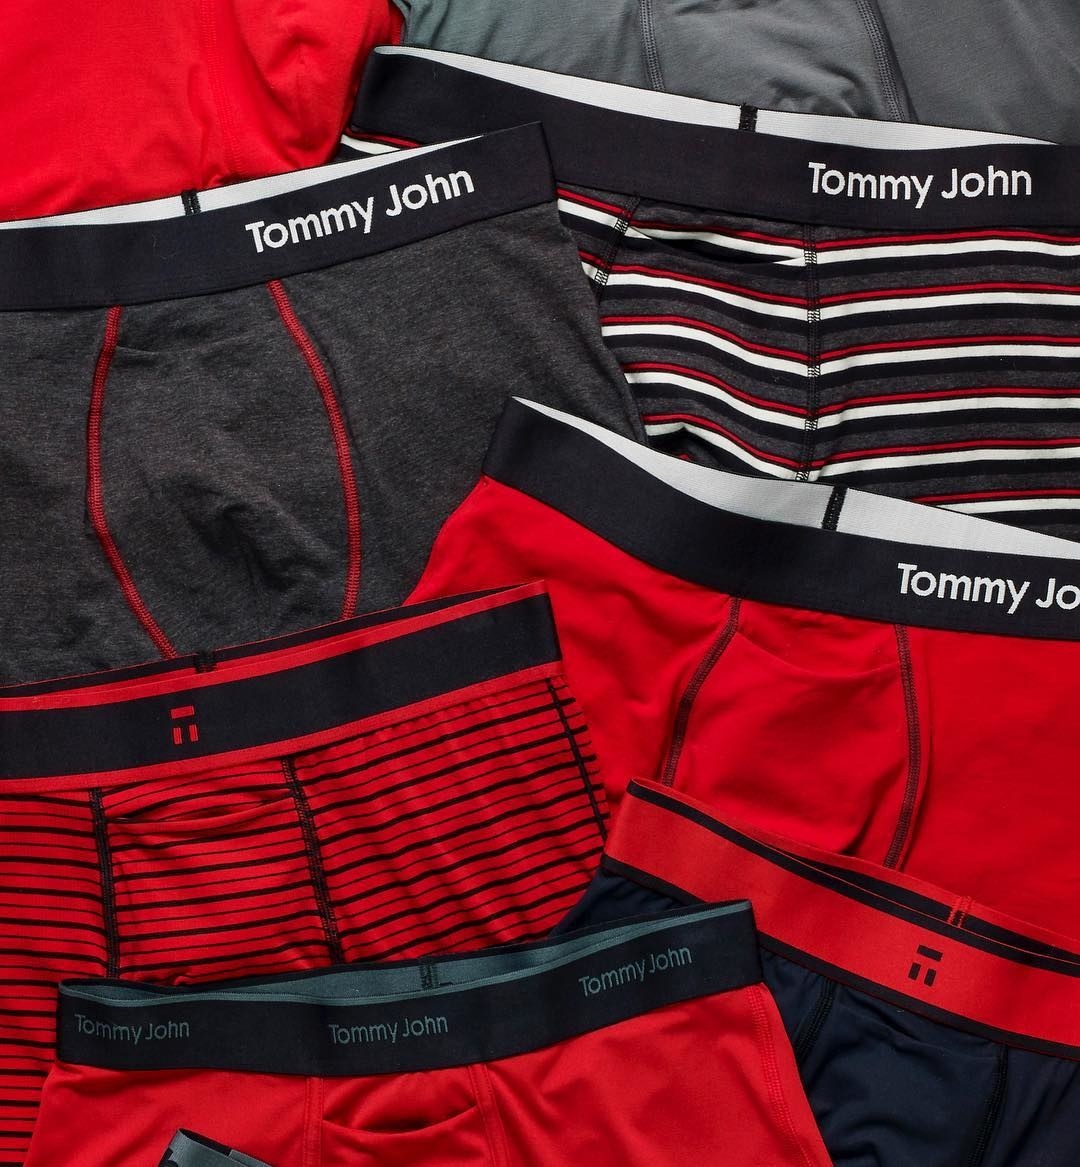 tommy johns underwear nordstrom